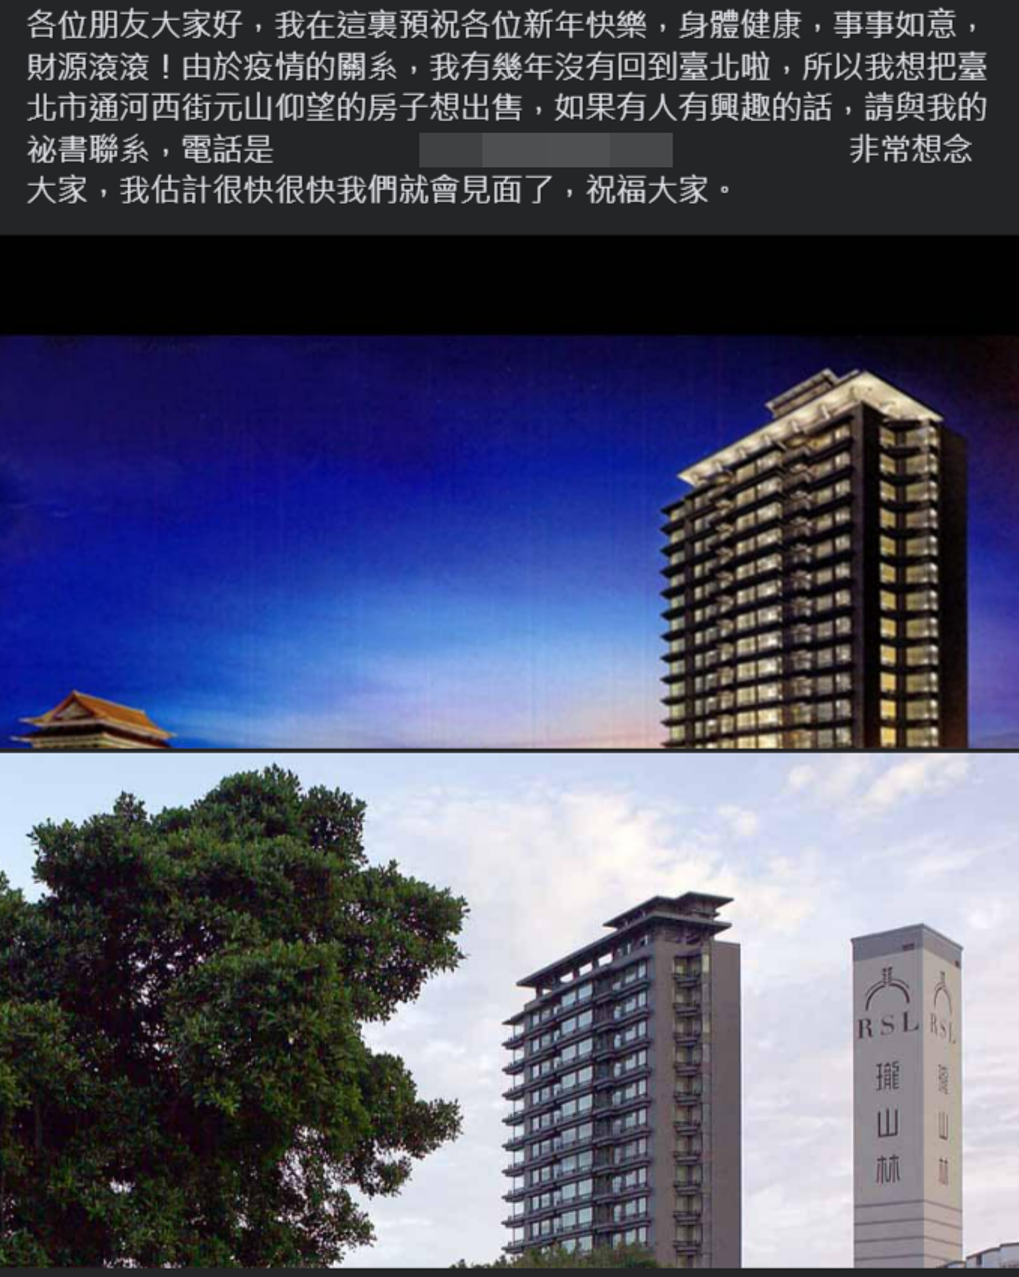 失联数月突发声出售台北豪宅 甄珍预告“很快会见面”